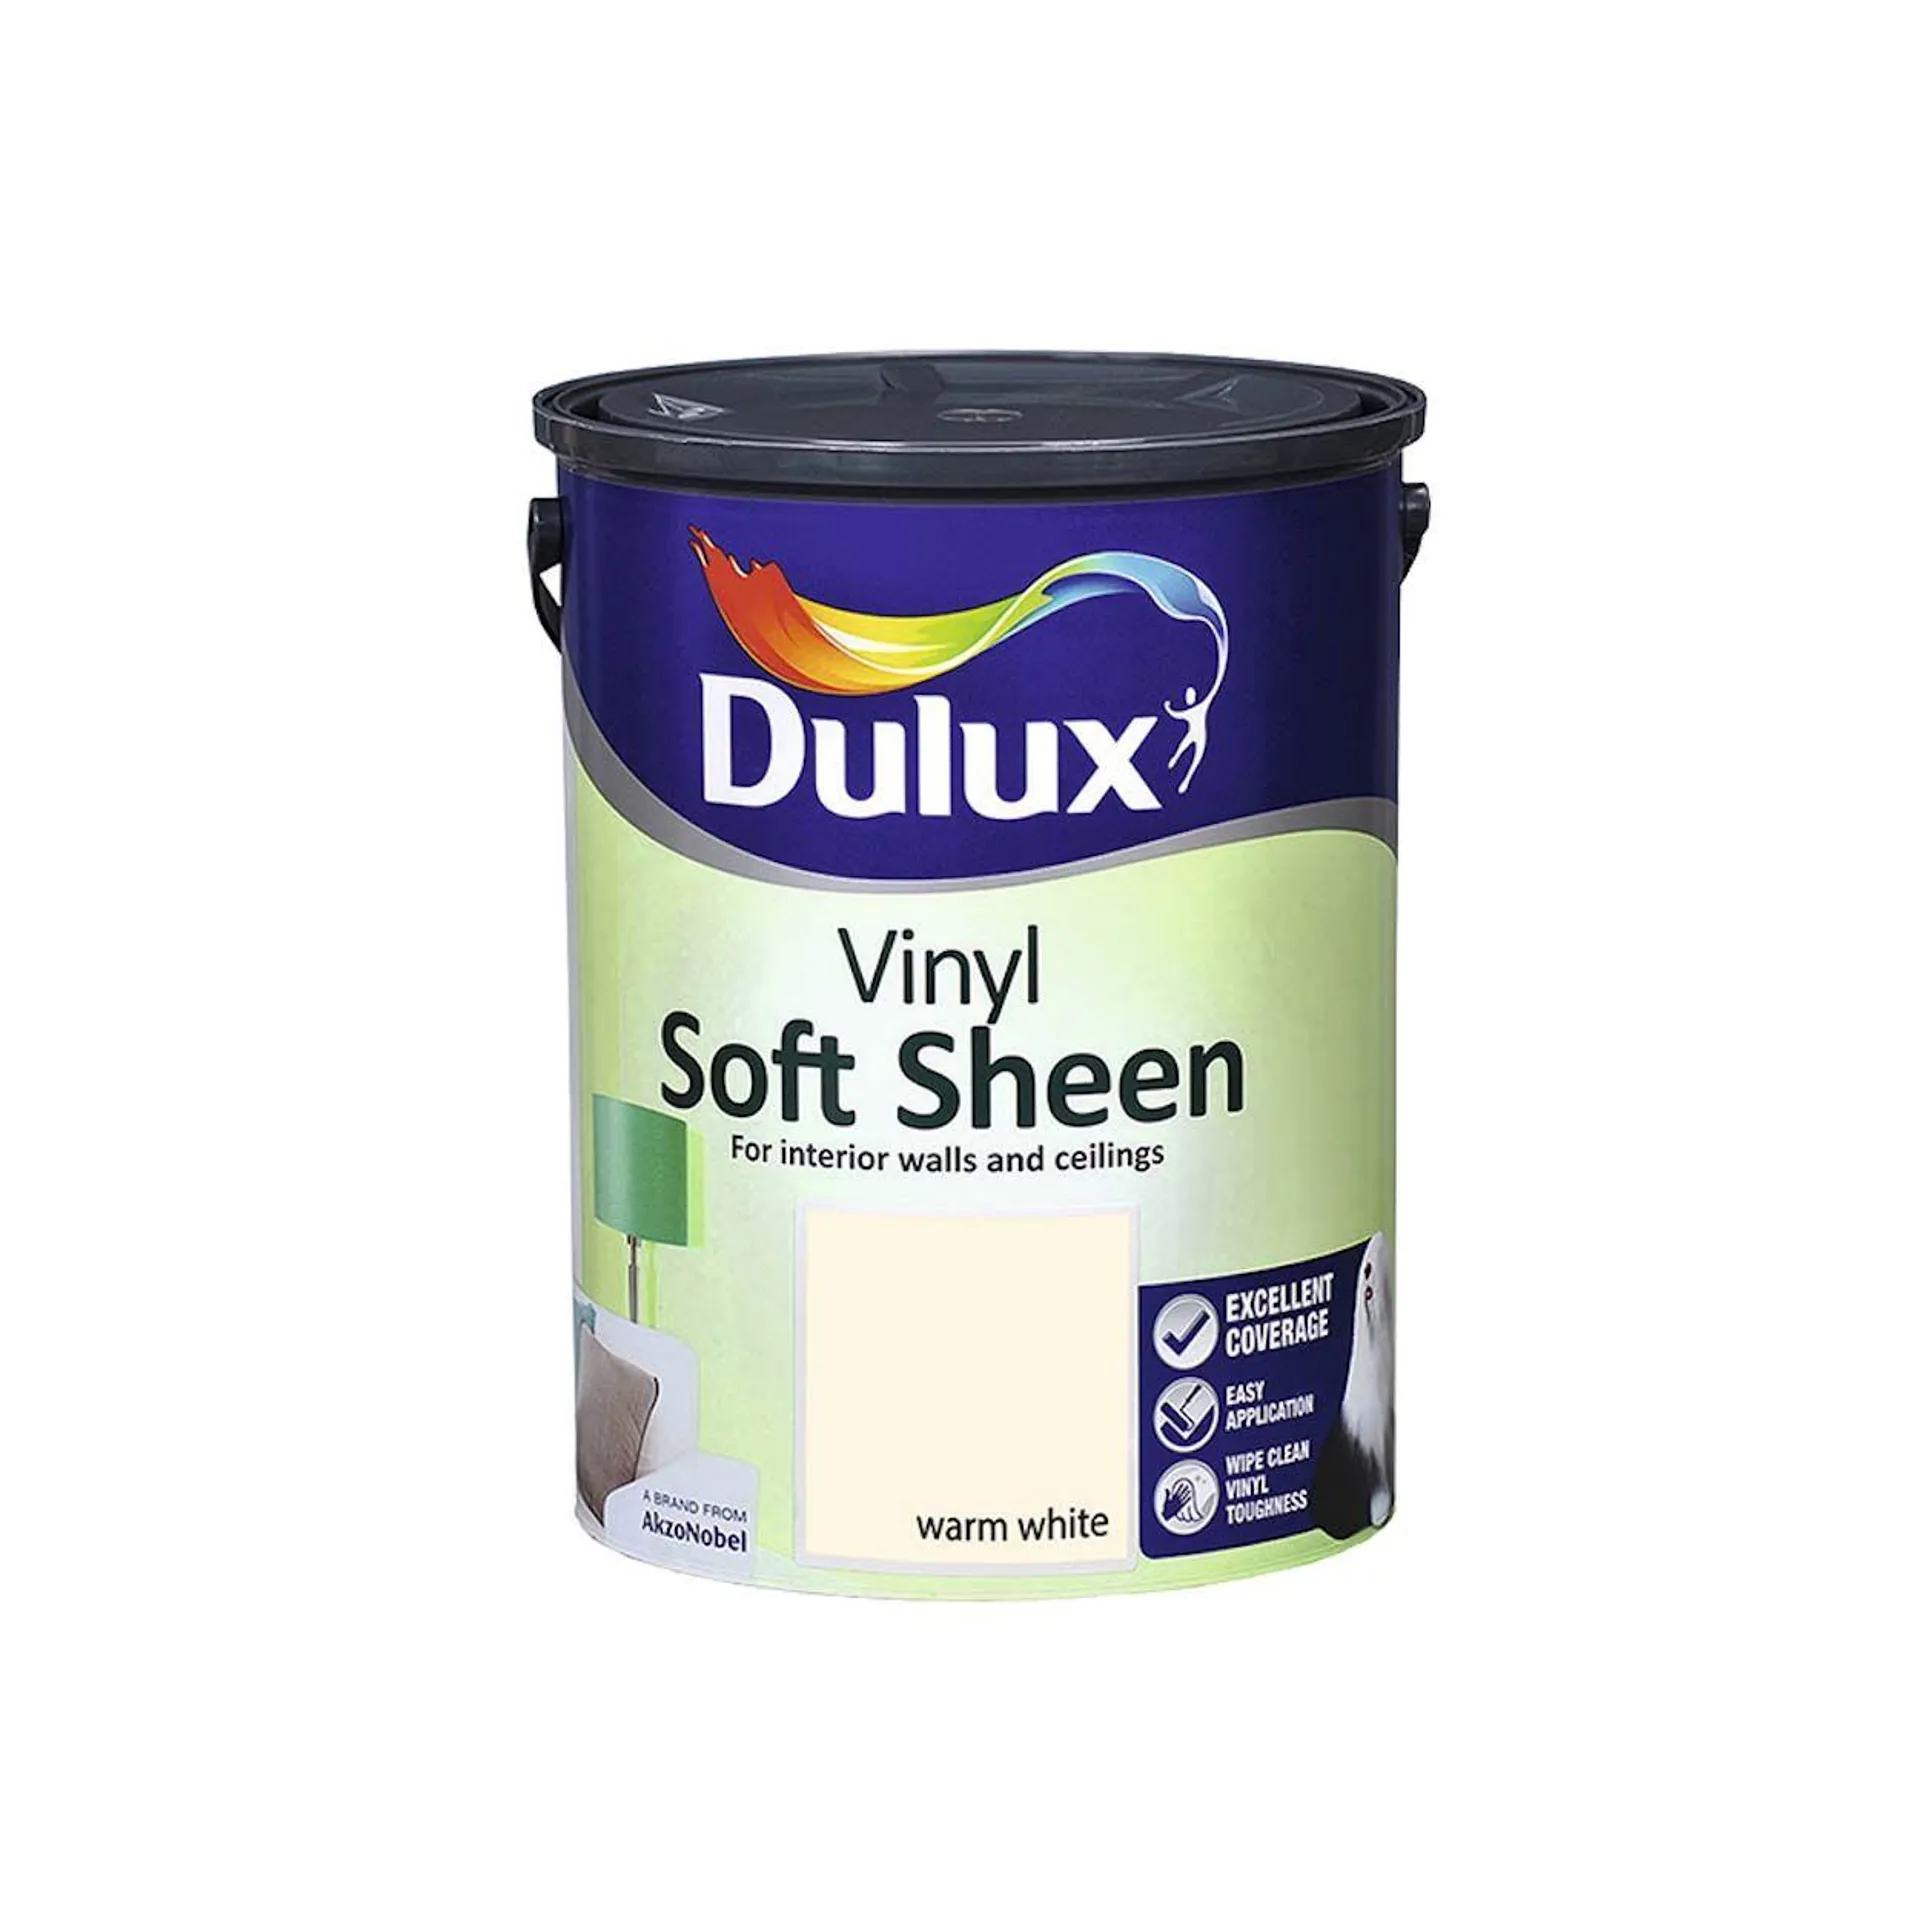 Dulux Vinyl Soft Sheen Warm White 5L